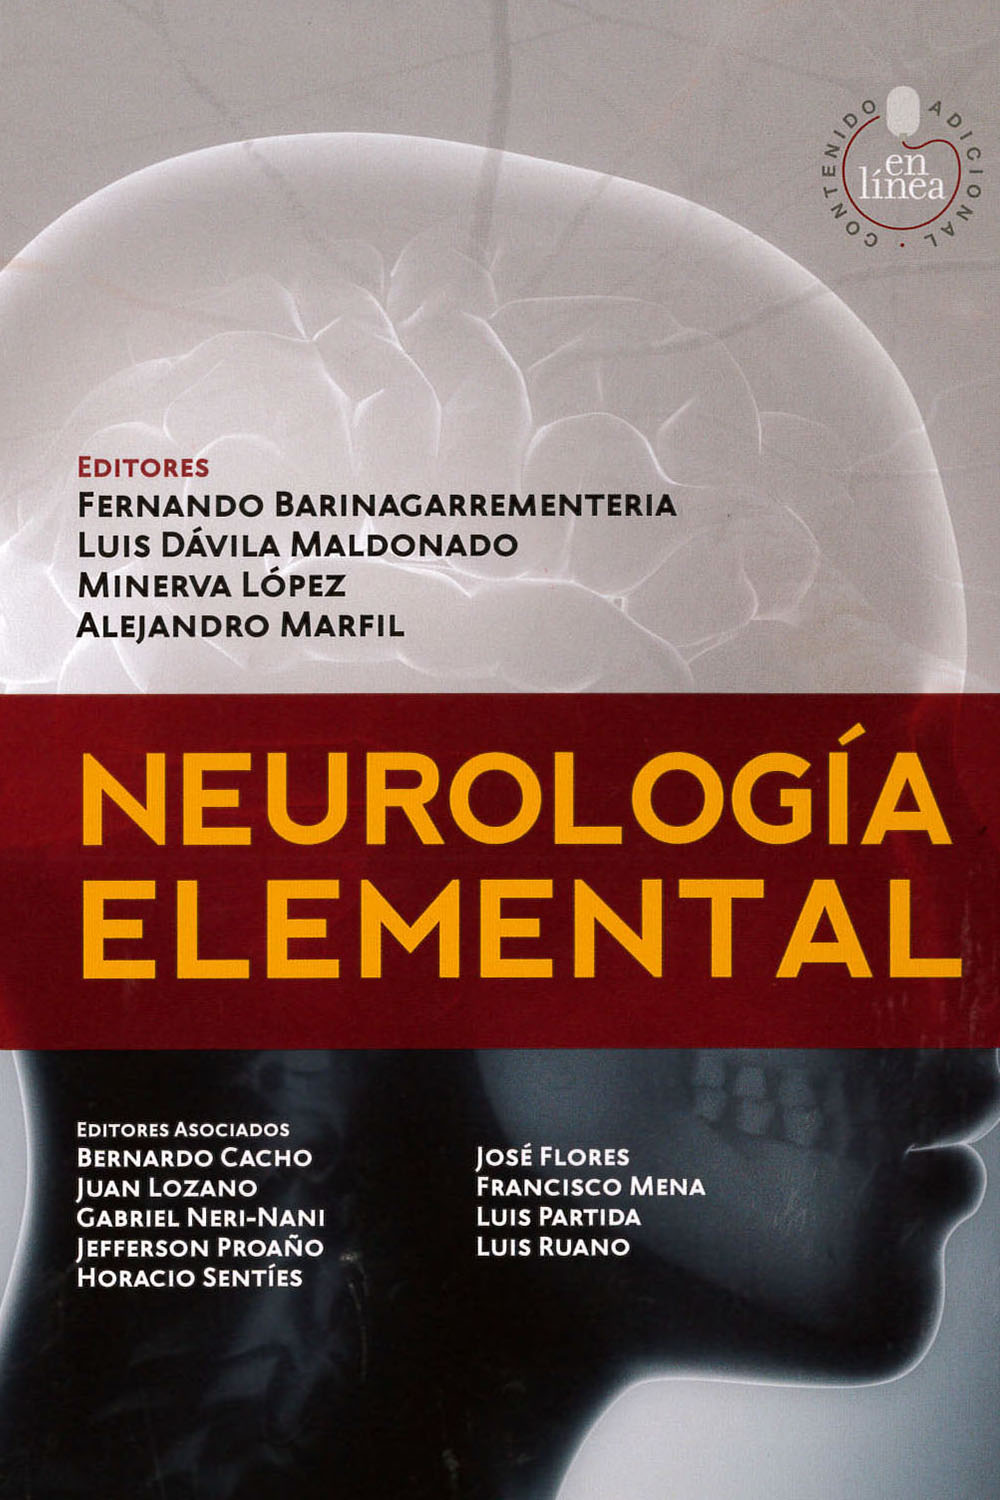 2 / 26 - RC346 B37 Neurología Elemental - ELSEVIER, España 2014
